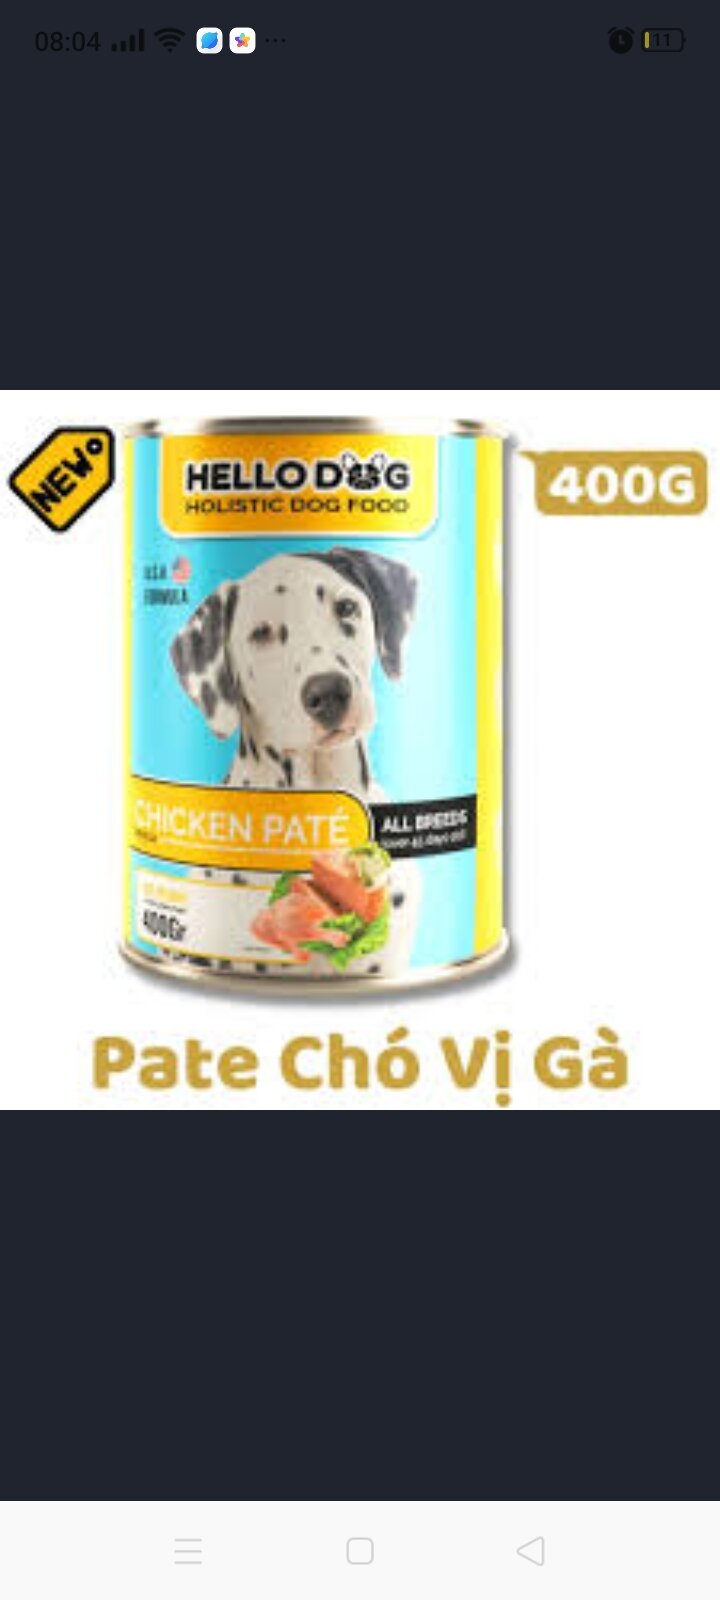 400g Pate Hello dog - Thức ăn ướt cho chó vị gà thumbnail